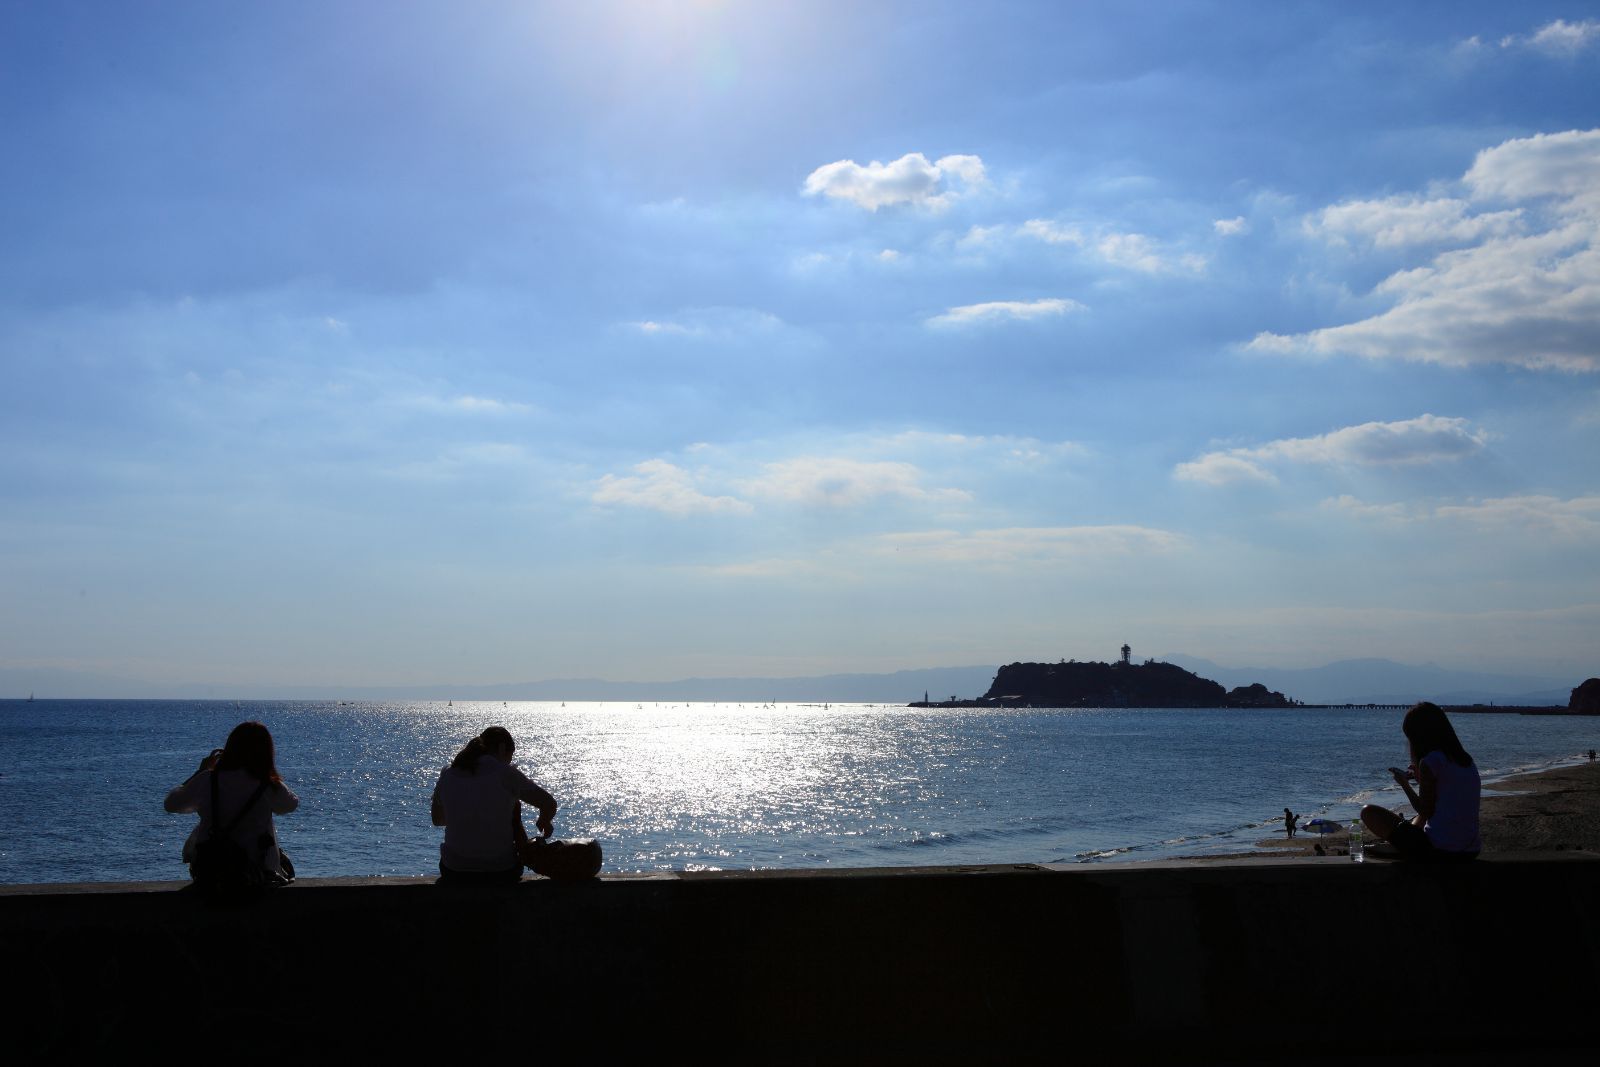 携程攻略 镰仓市湘南海岸景点 夕阳下的湘南海岸是最美的 平静的海面